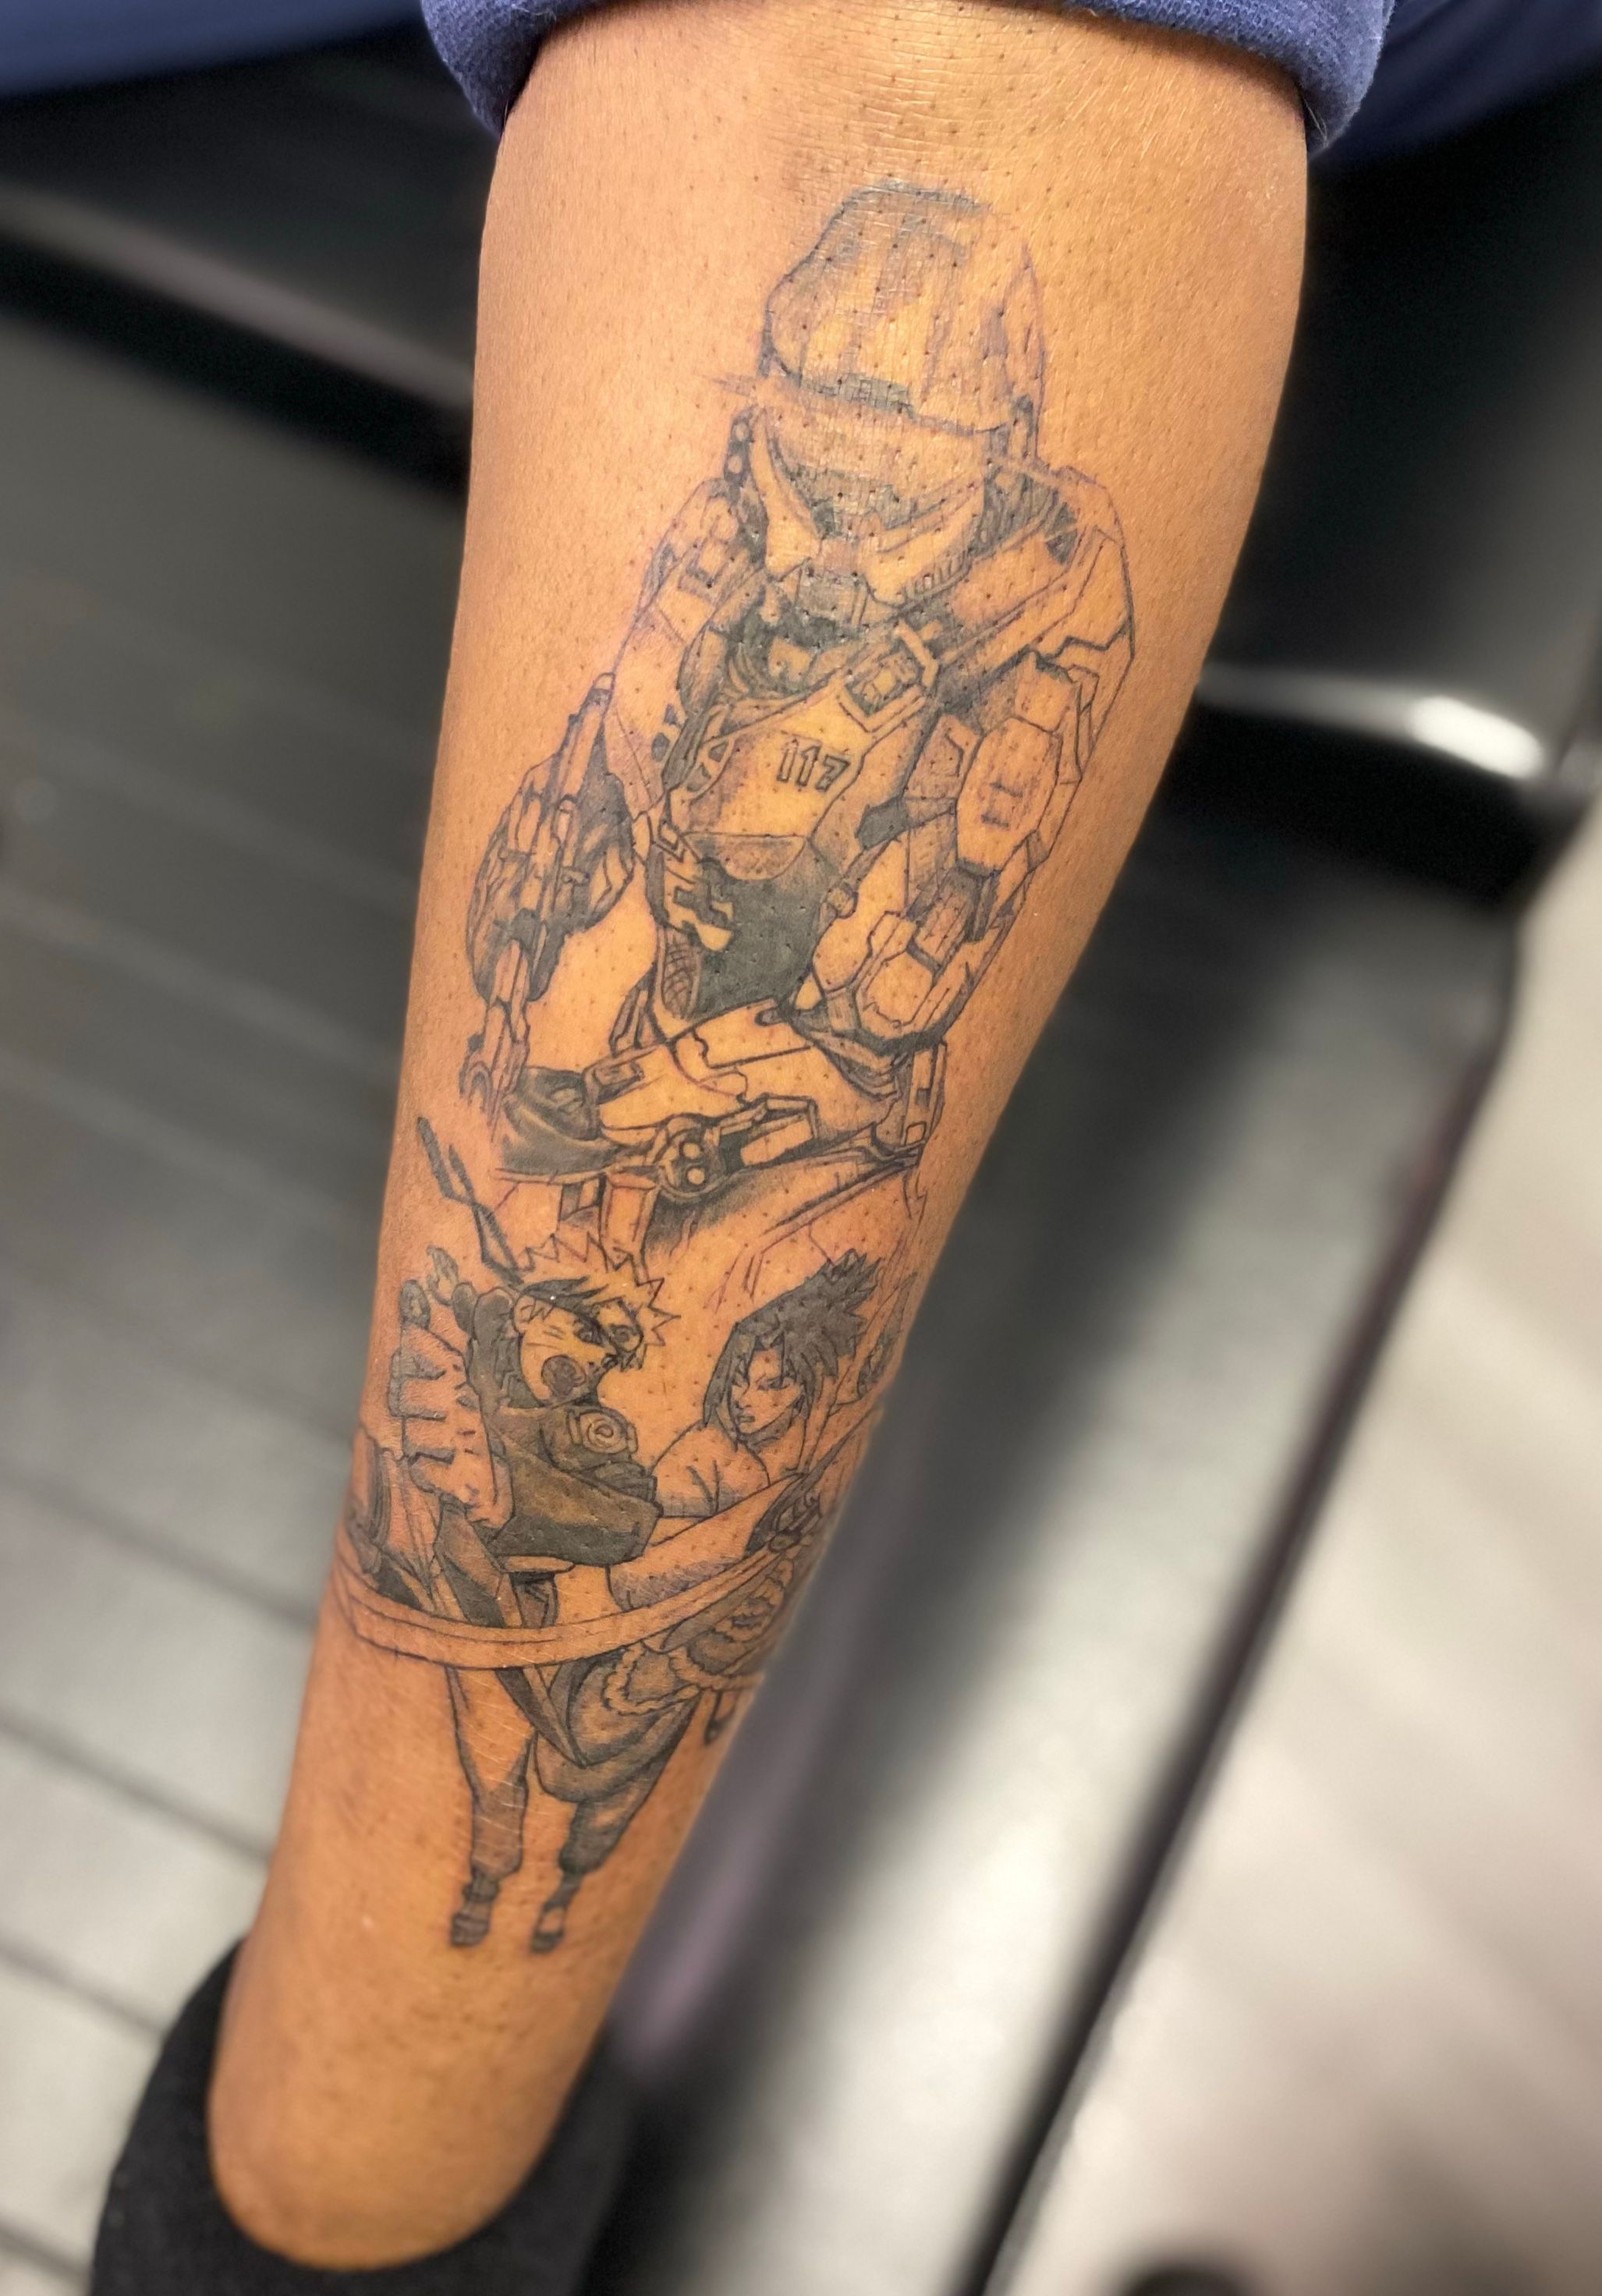 טוויטר  Autumn Caldwell בטוויטר Forgot to post another update on my anime  leg sleeve Next up will be Kakashi from NARUTO tattoos AnimeArt  DemonSlayer FairyTail FMAB tanjiro NatsuDragneel Mustang fire  httpstcotTTW9VvarU